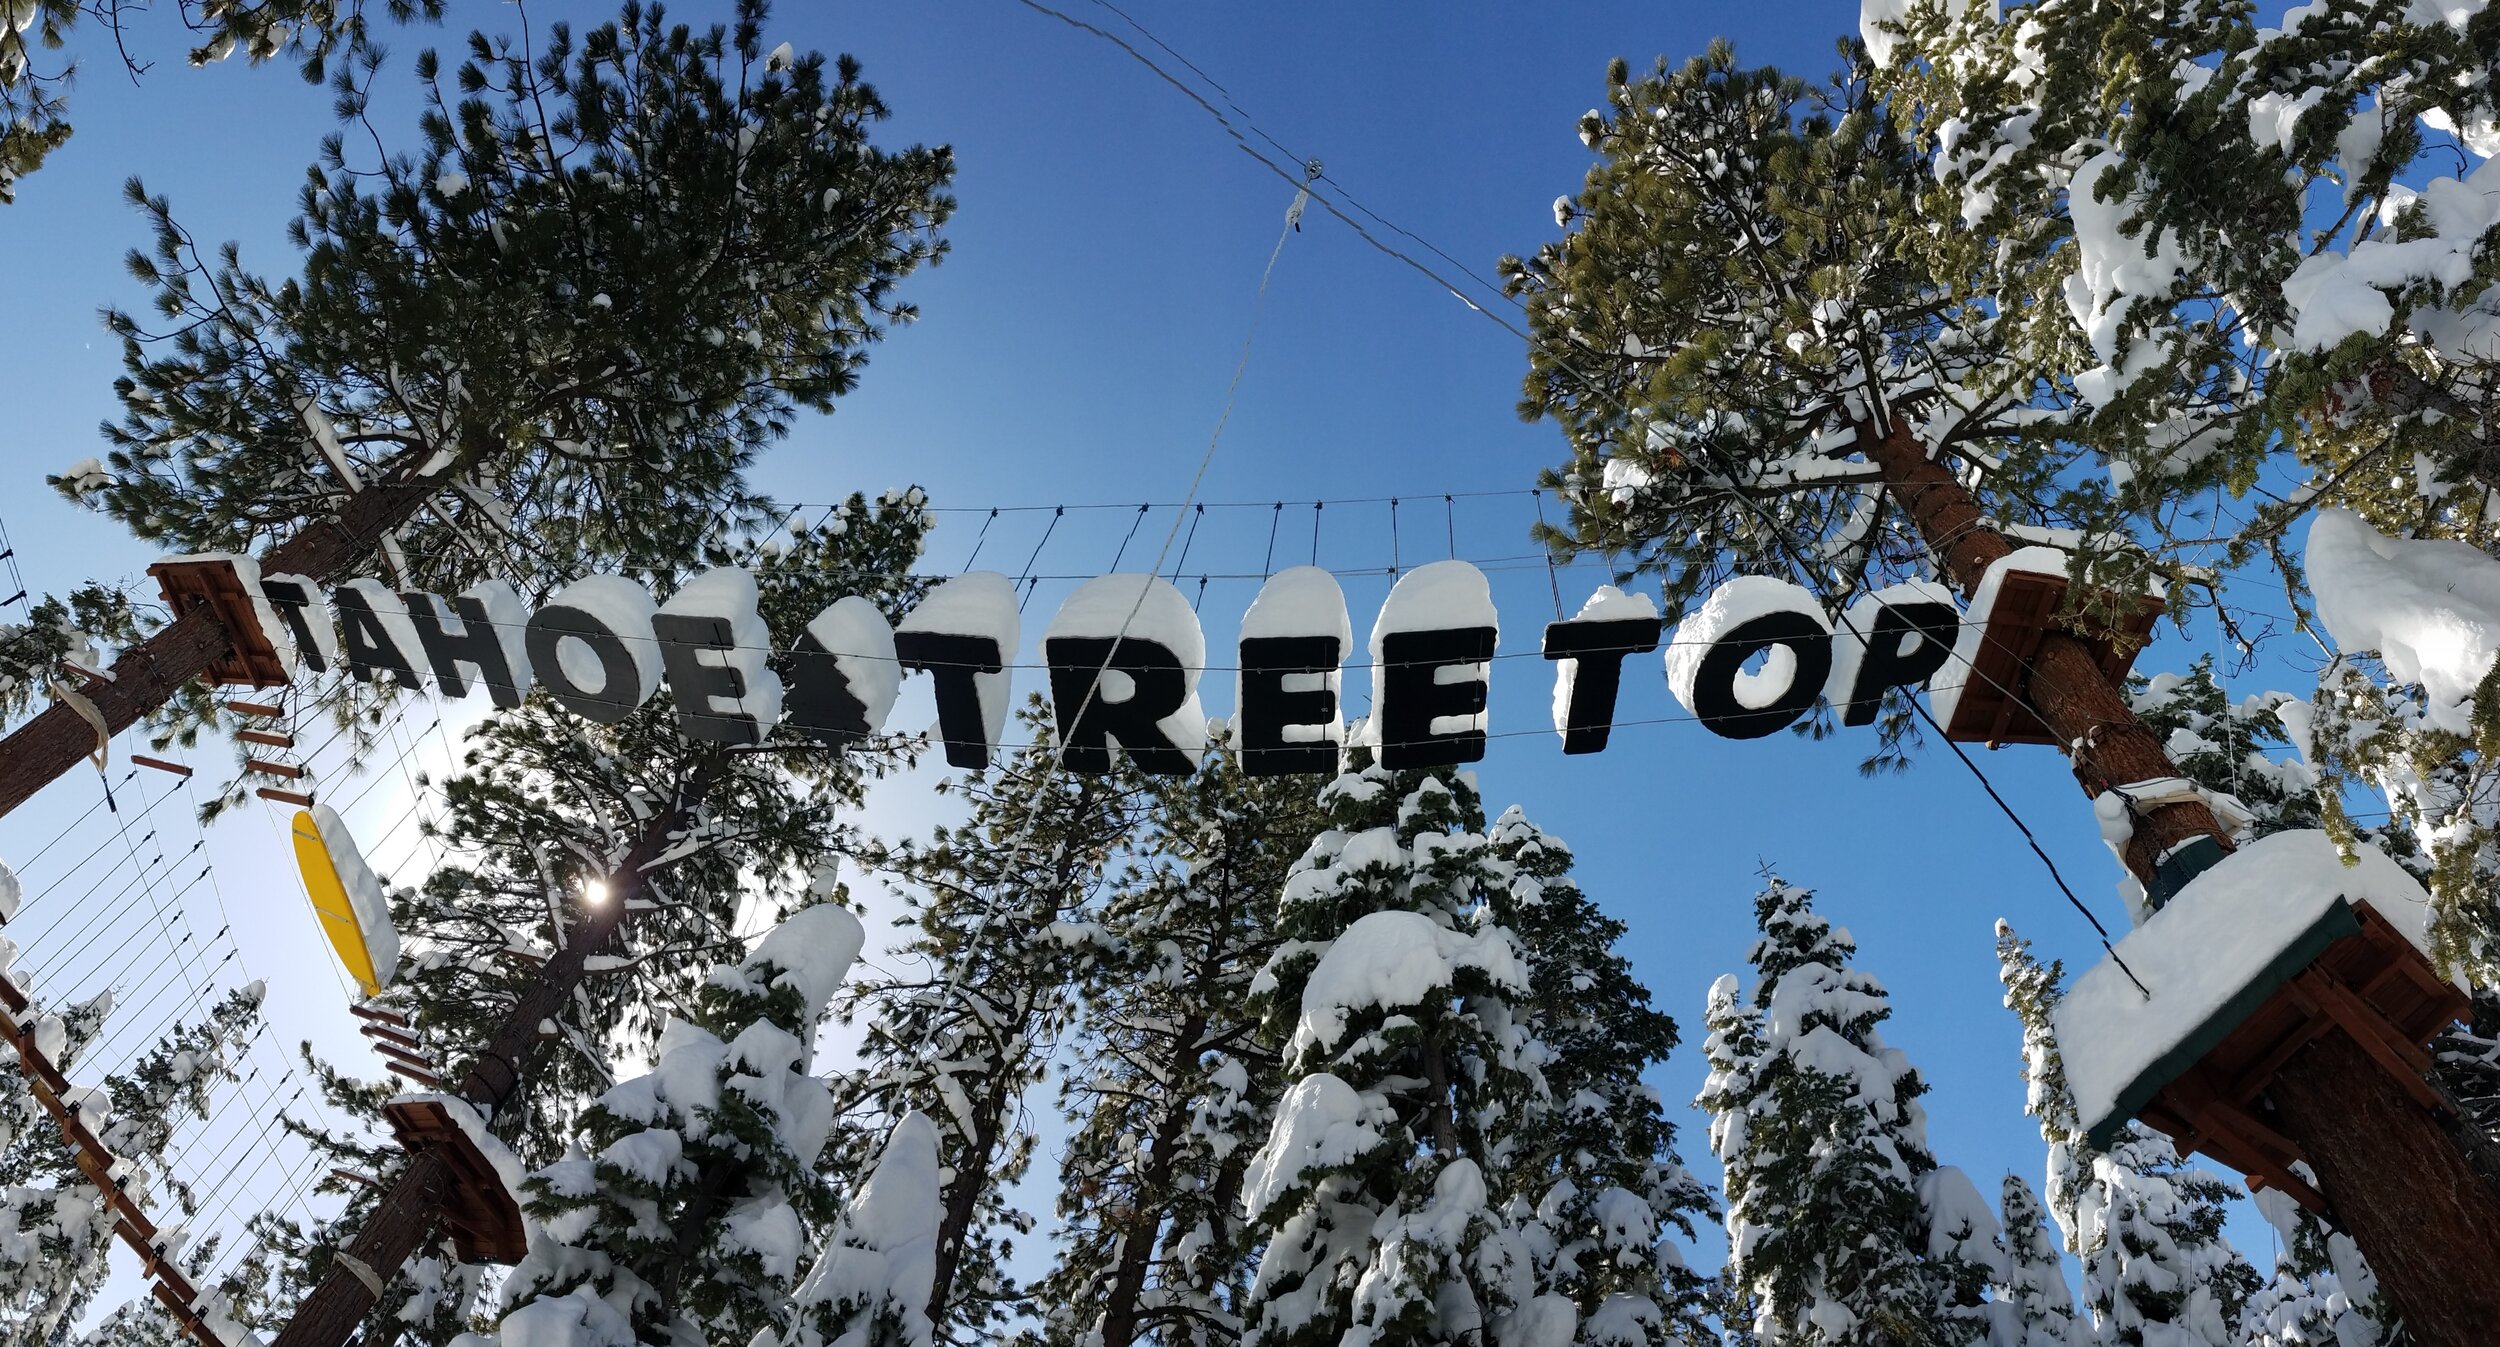 Snowy Tahoe Treetop photo.jpg